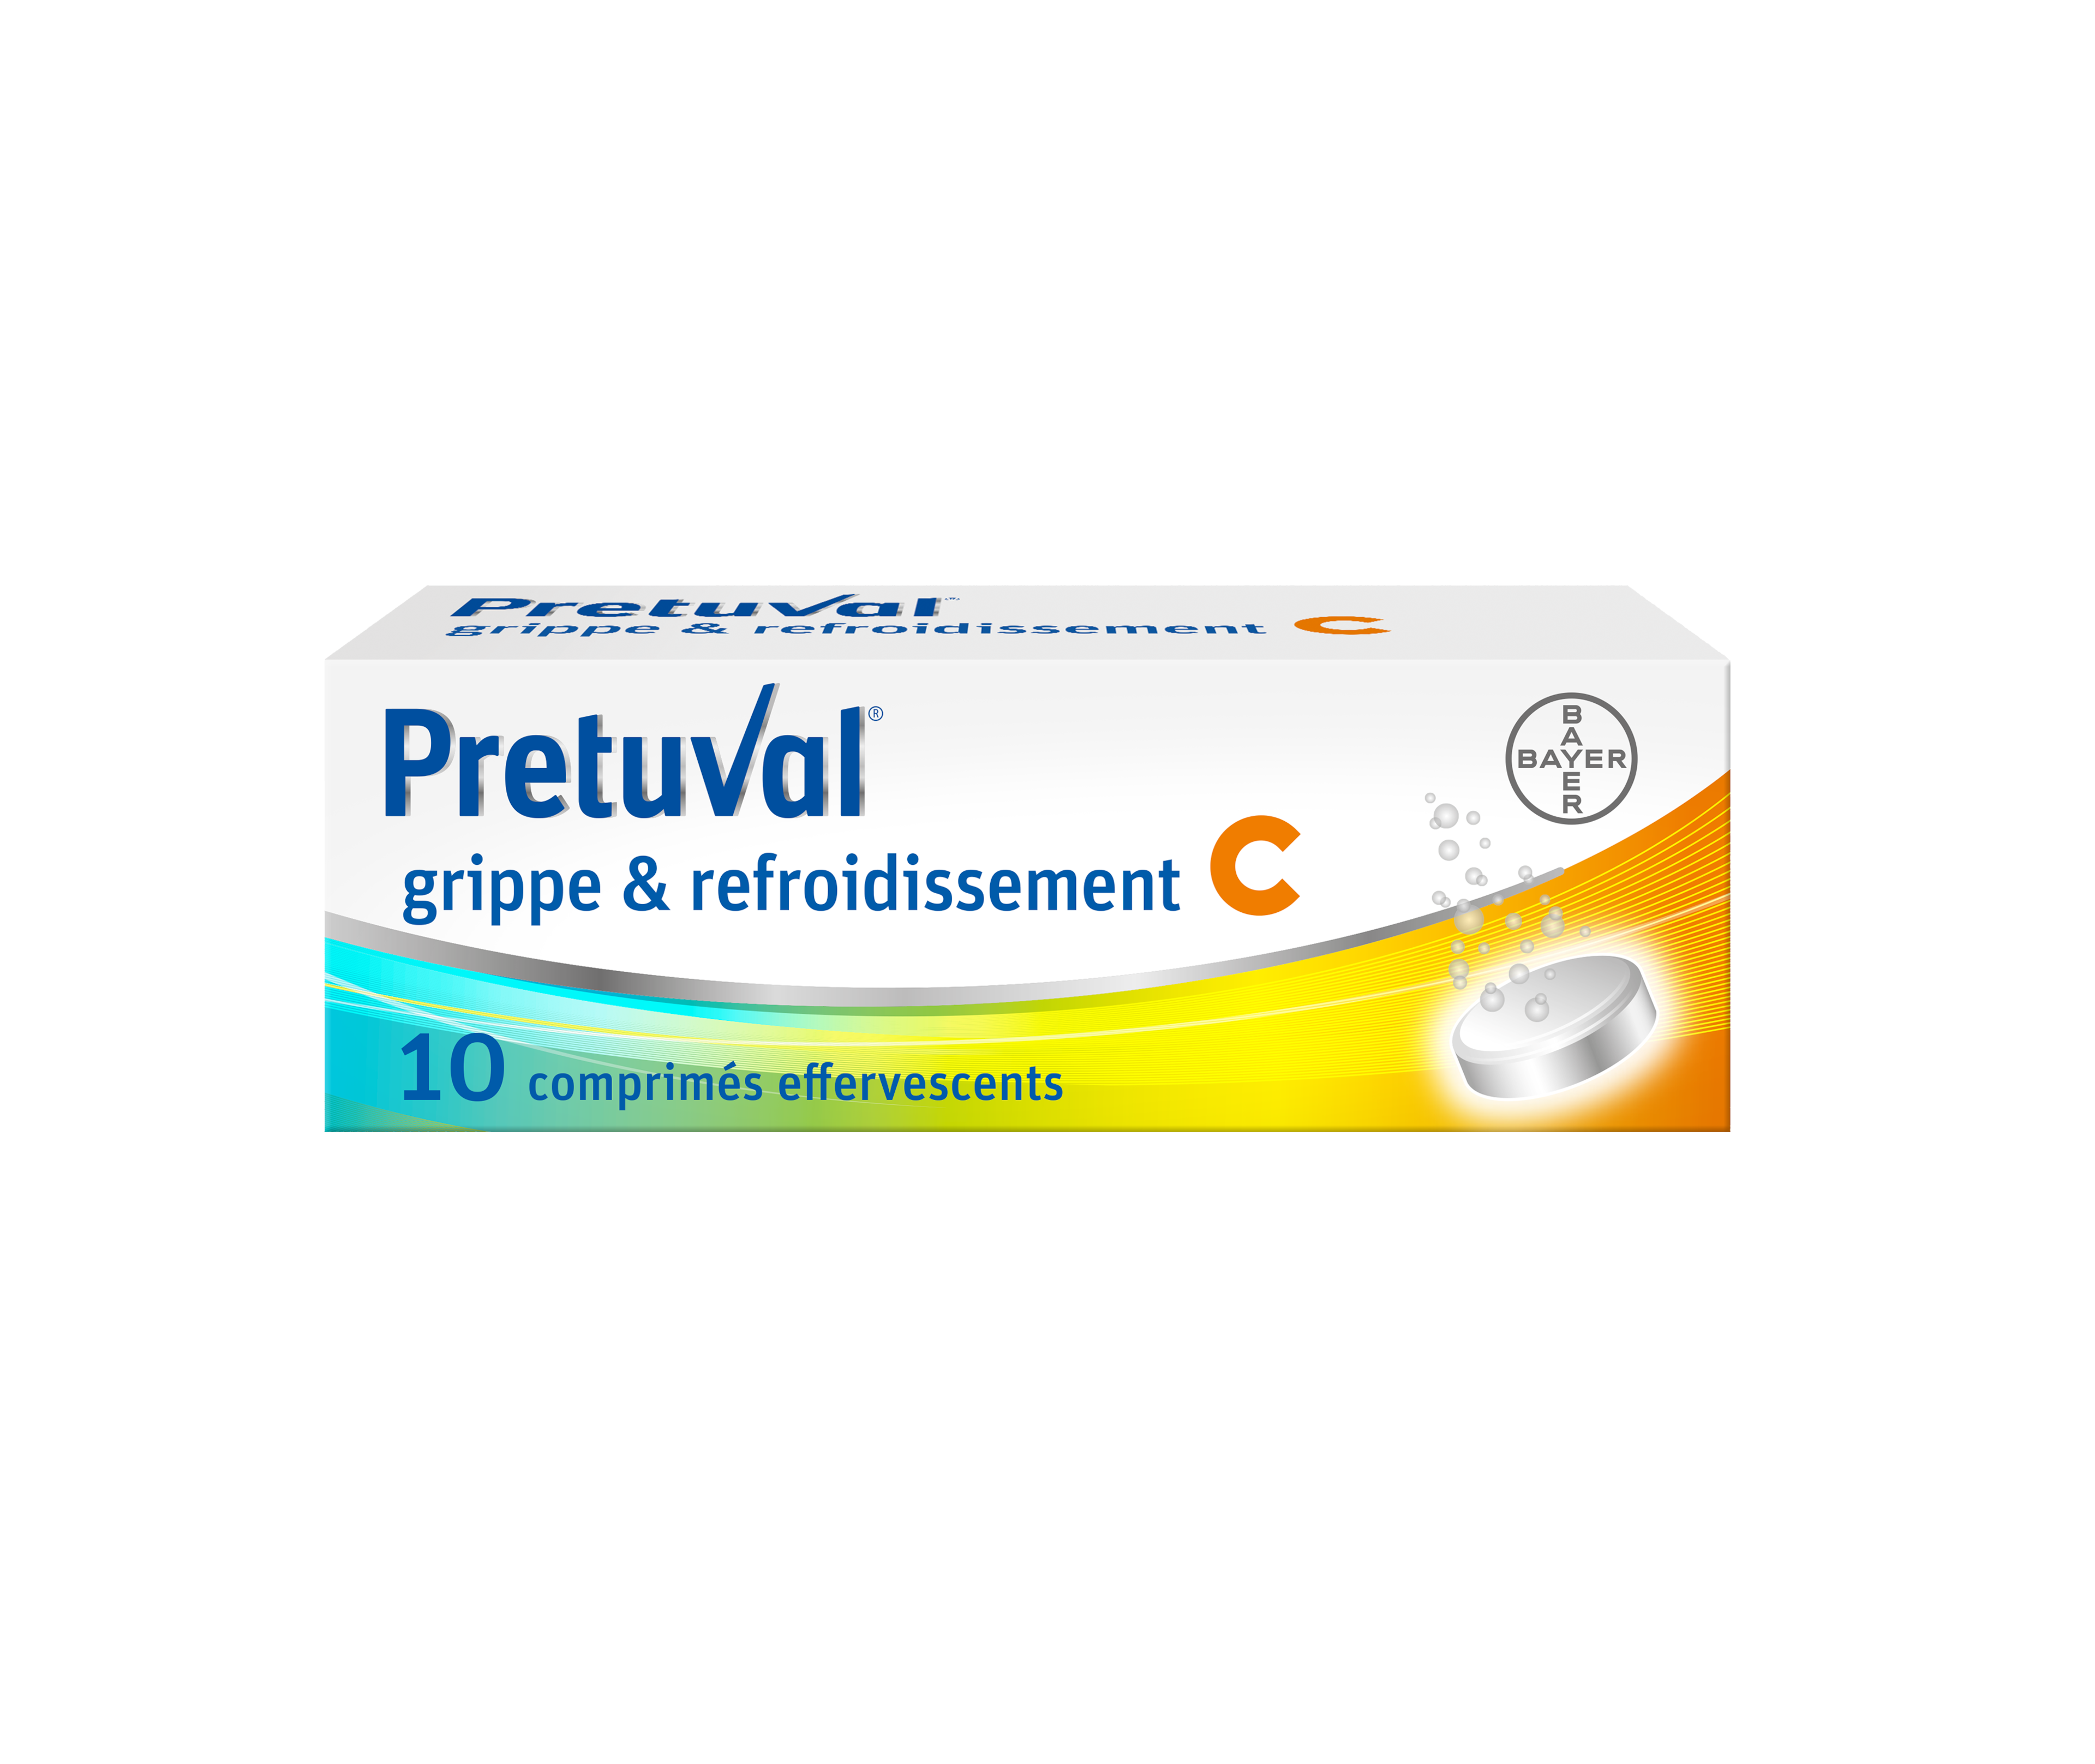 Pretuval® grippe & refroidissement C – 10 comprimés effervescents